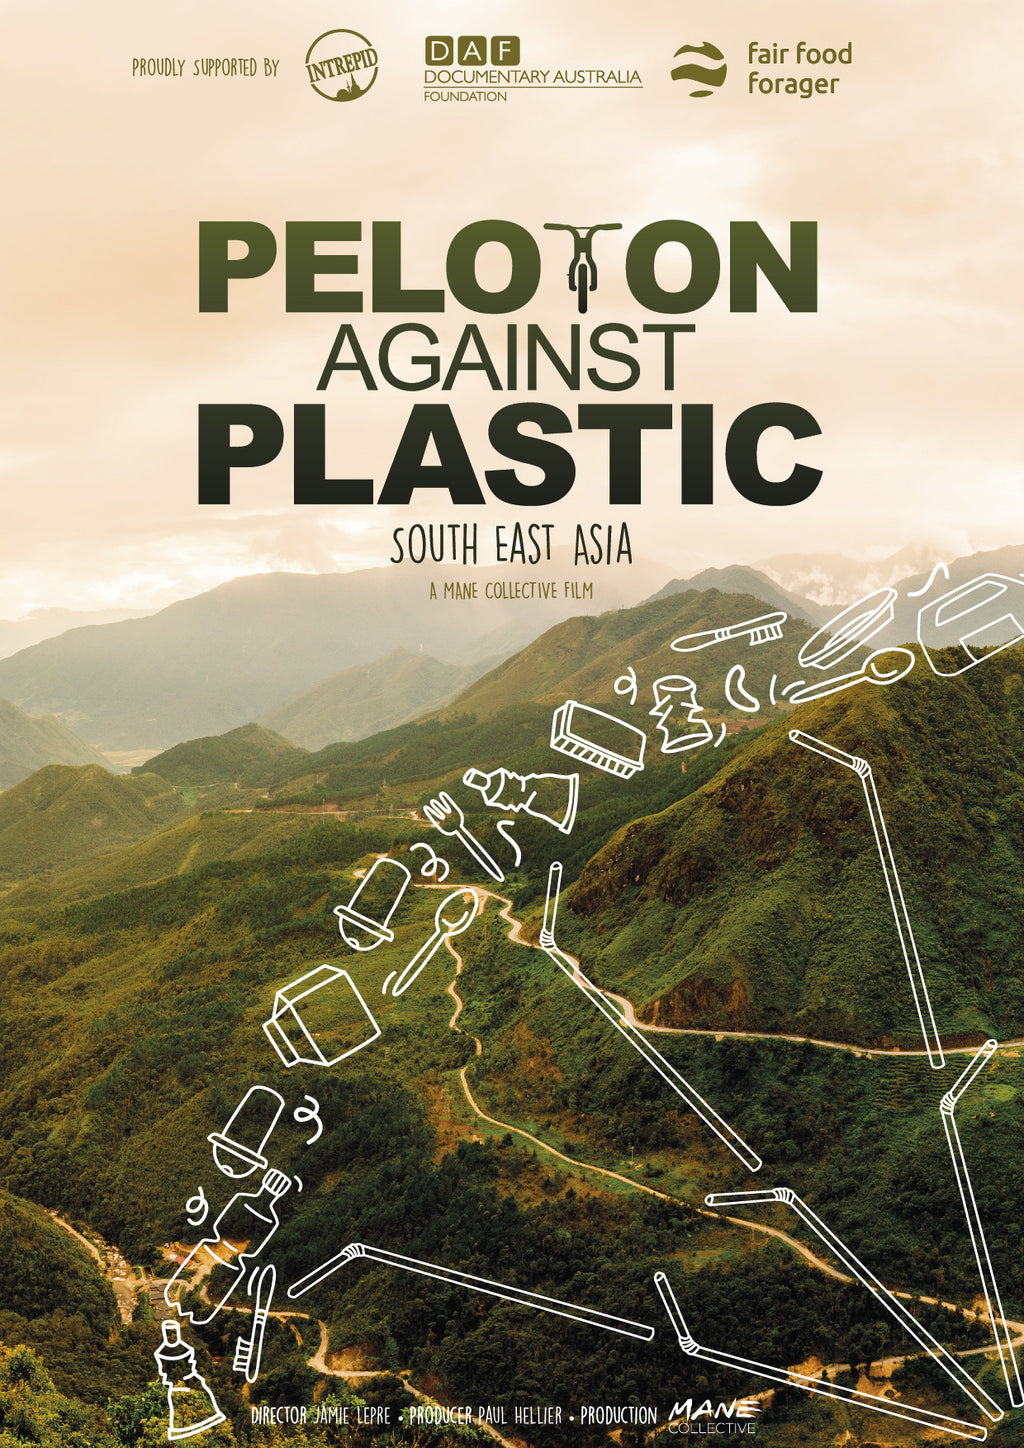 Peloton Against Plastic public screening license